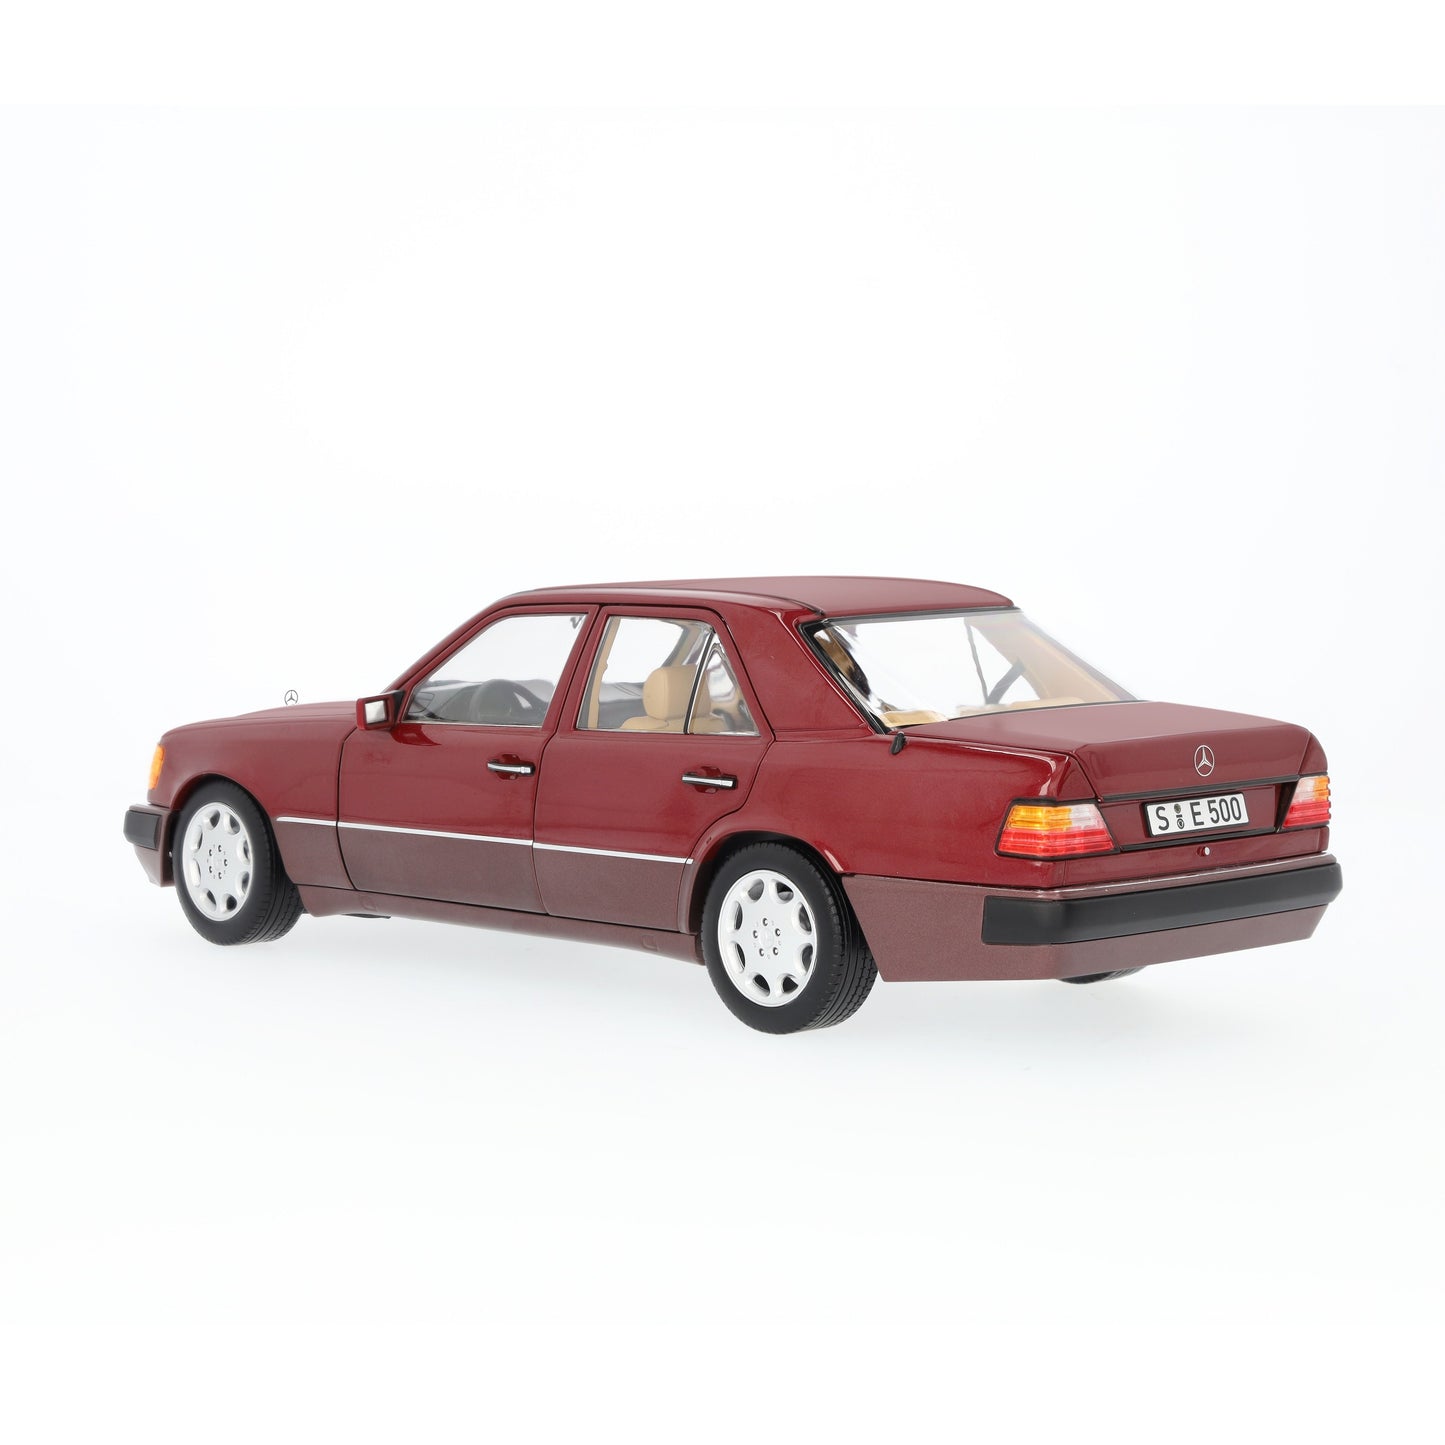 1:18 Mercedes-Benz E500 W124, 1991-1993, bordeauxrødmetallic, Org. MB æske, limited 2.000 stk., åben model